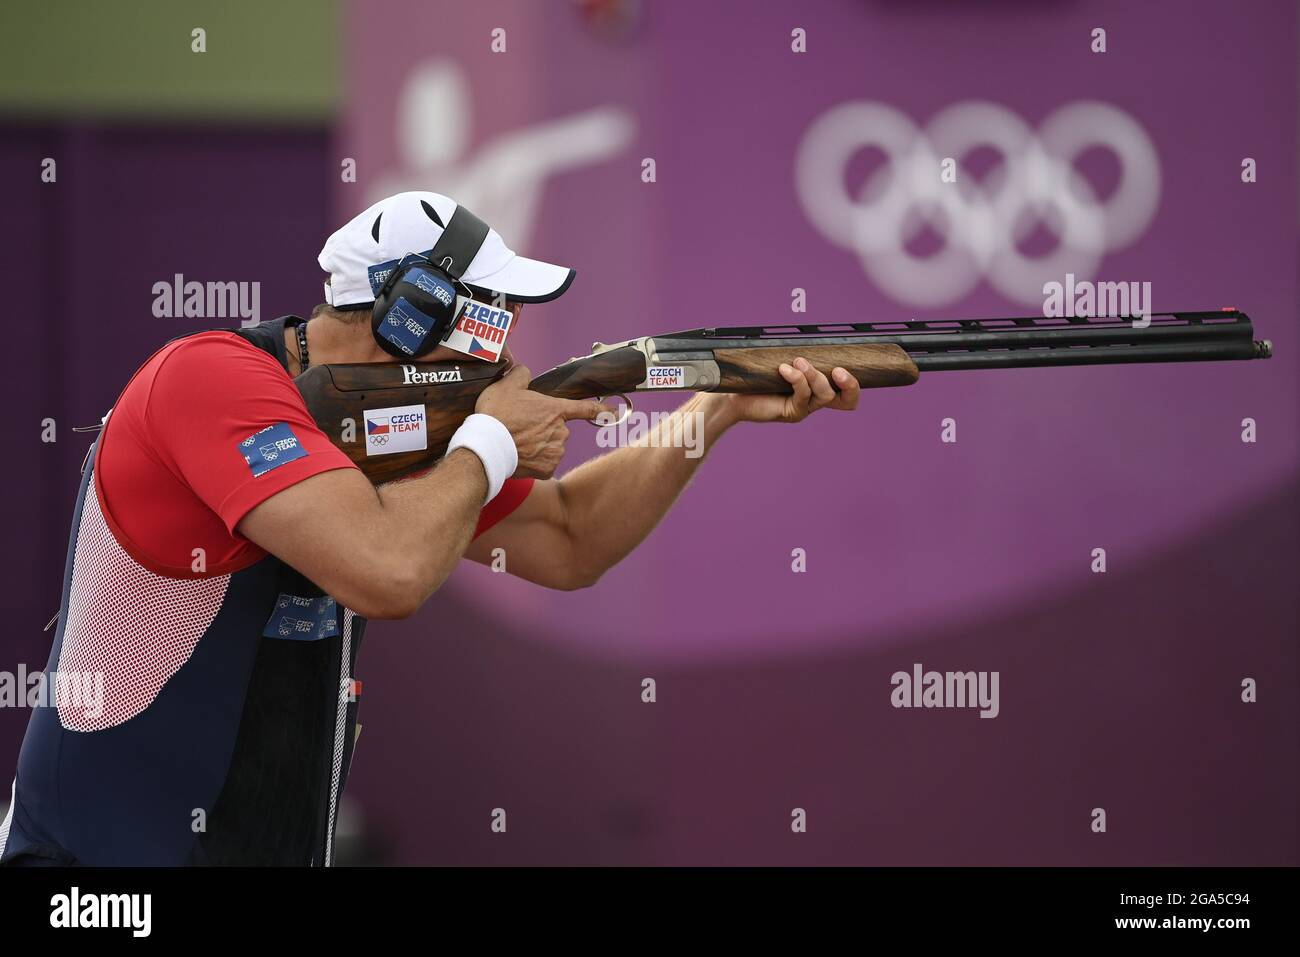 Lo sparatutto sportivo ceco David Kostelecky compete nella finale di tiro degli uomini durante le Olimpiadi estive di Tokyo 2020, il 29 luglio 2021, a Tokyo, Giappone. Foto Stock